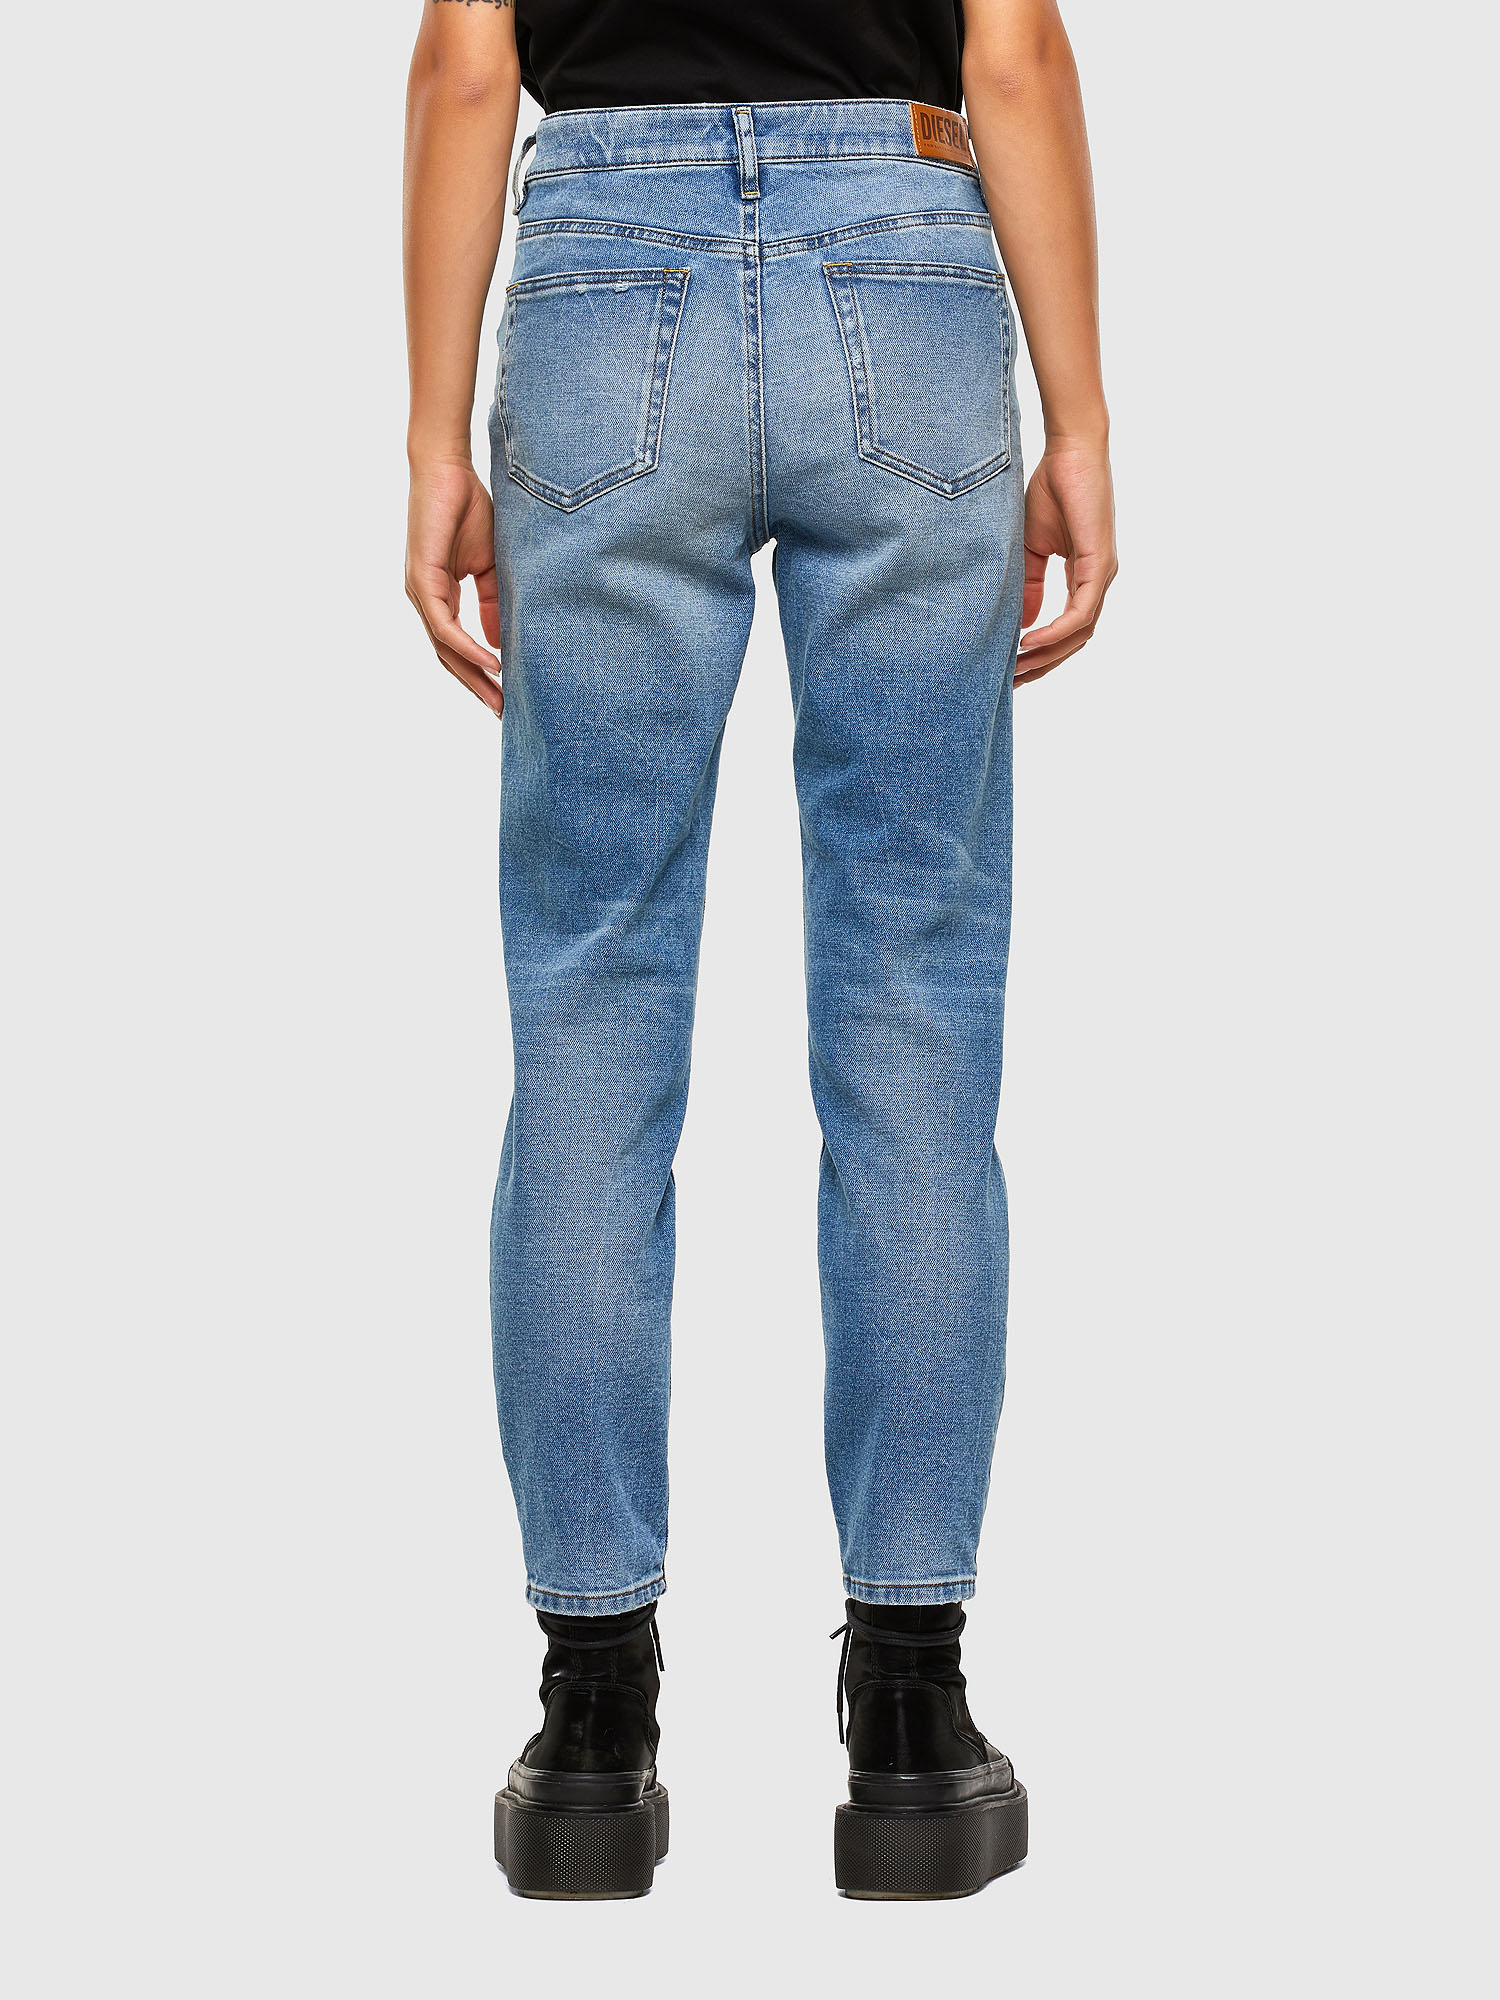 Diesel - D-Joy 009EU Slim Jeans,  - Image 2